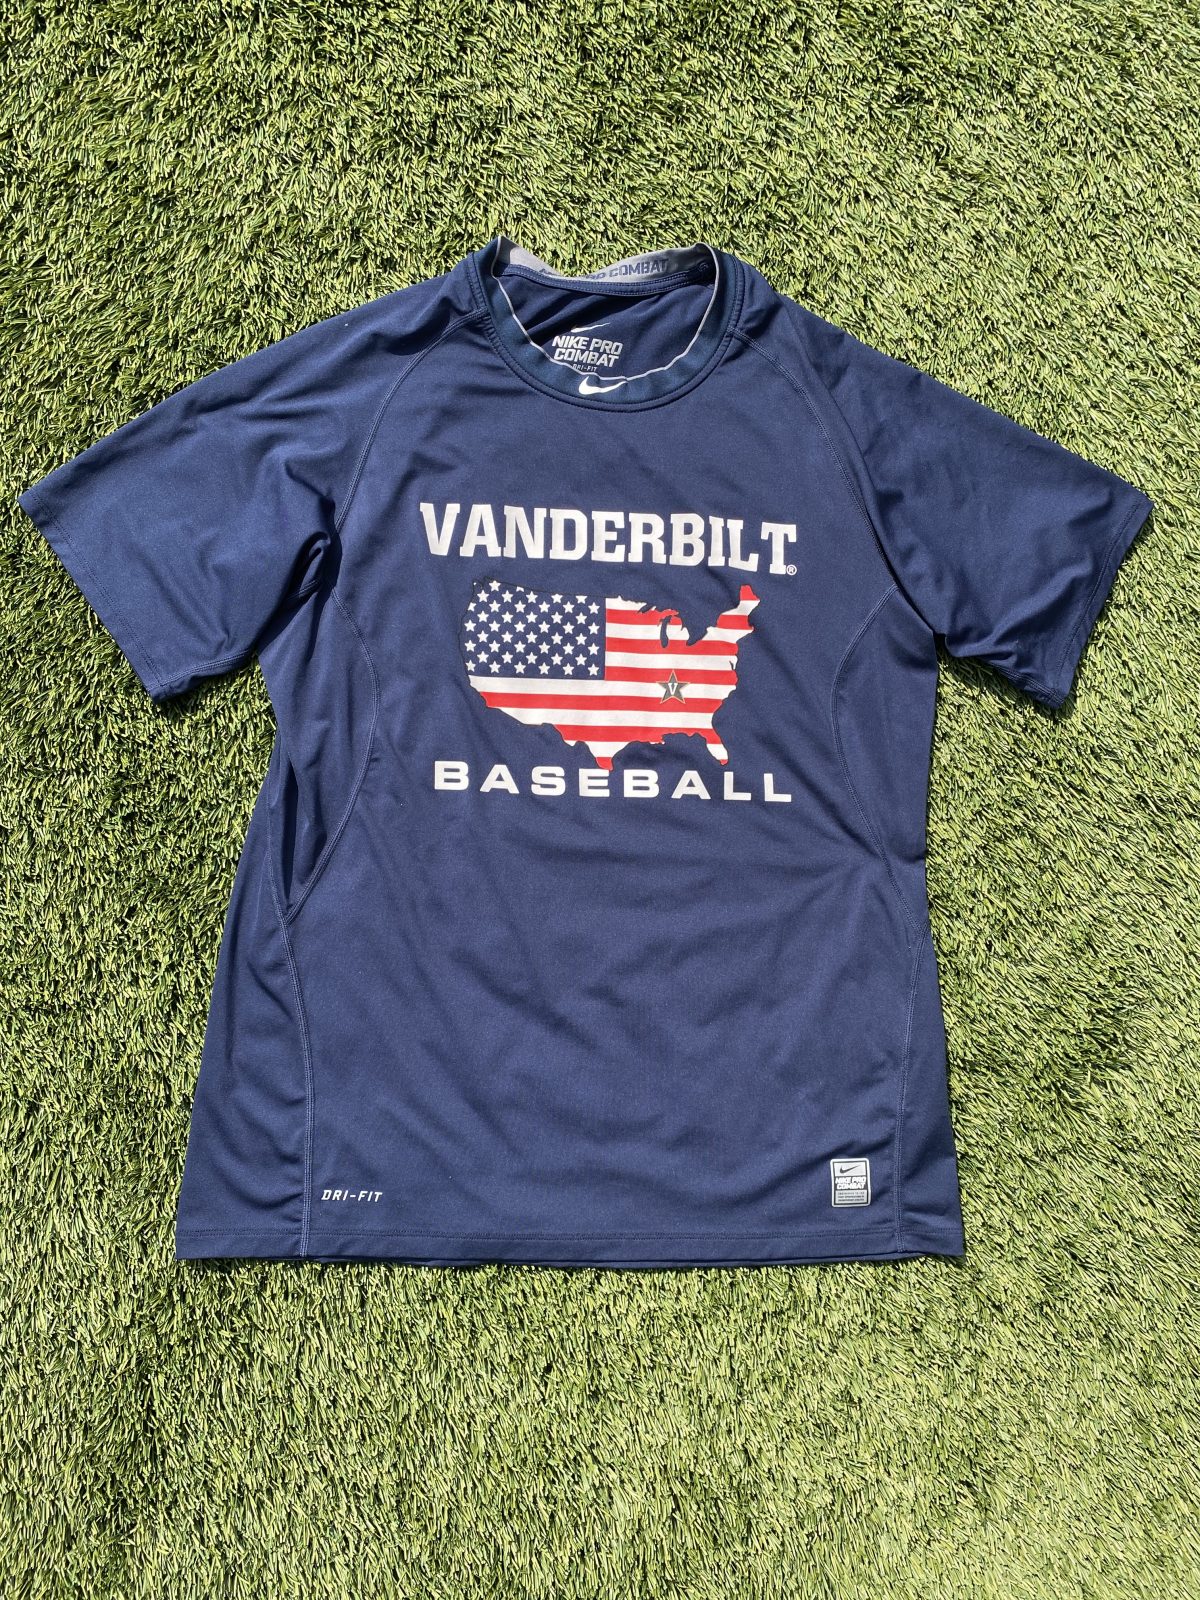 Denken Specialiseren kleding stof Vanderbilt Baseball Nike Pro Combat Tee : NARP Clothing